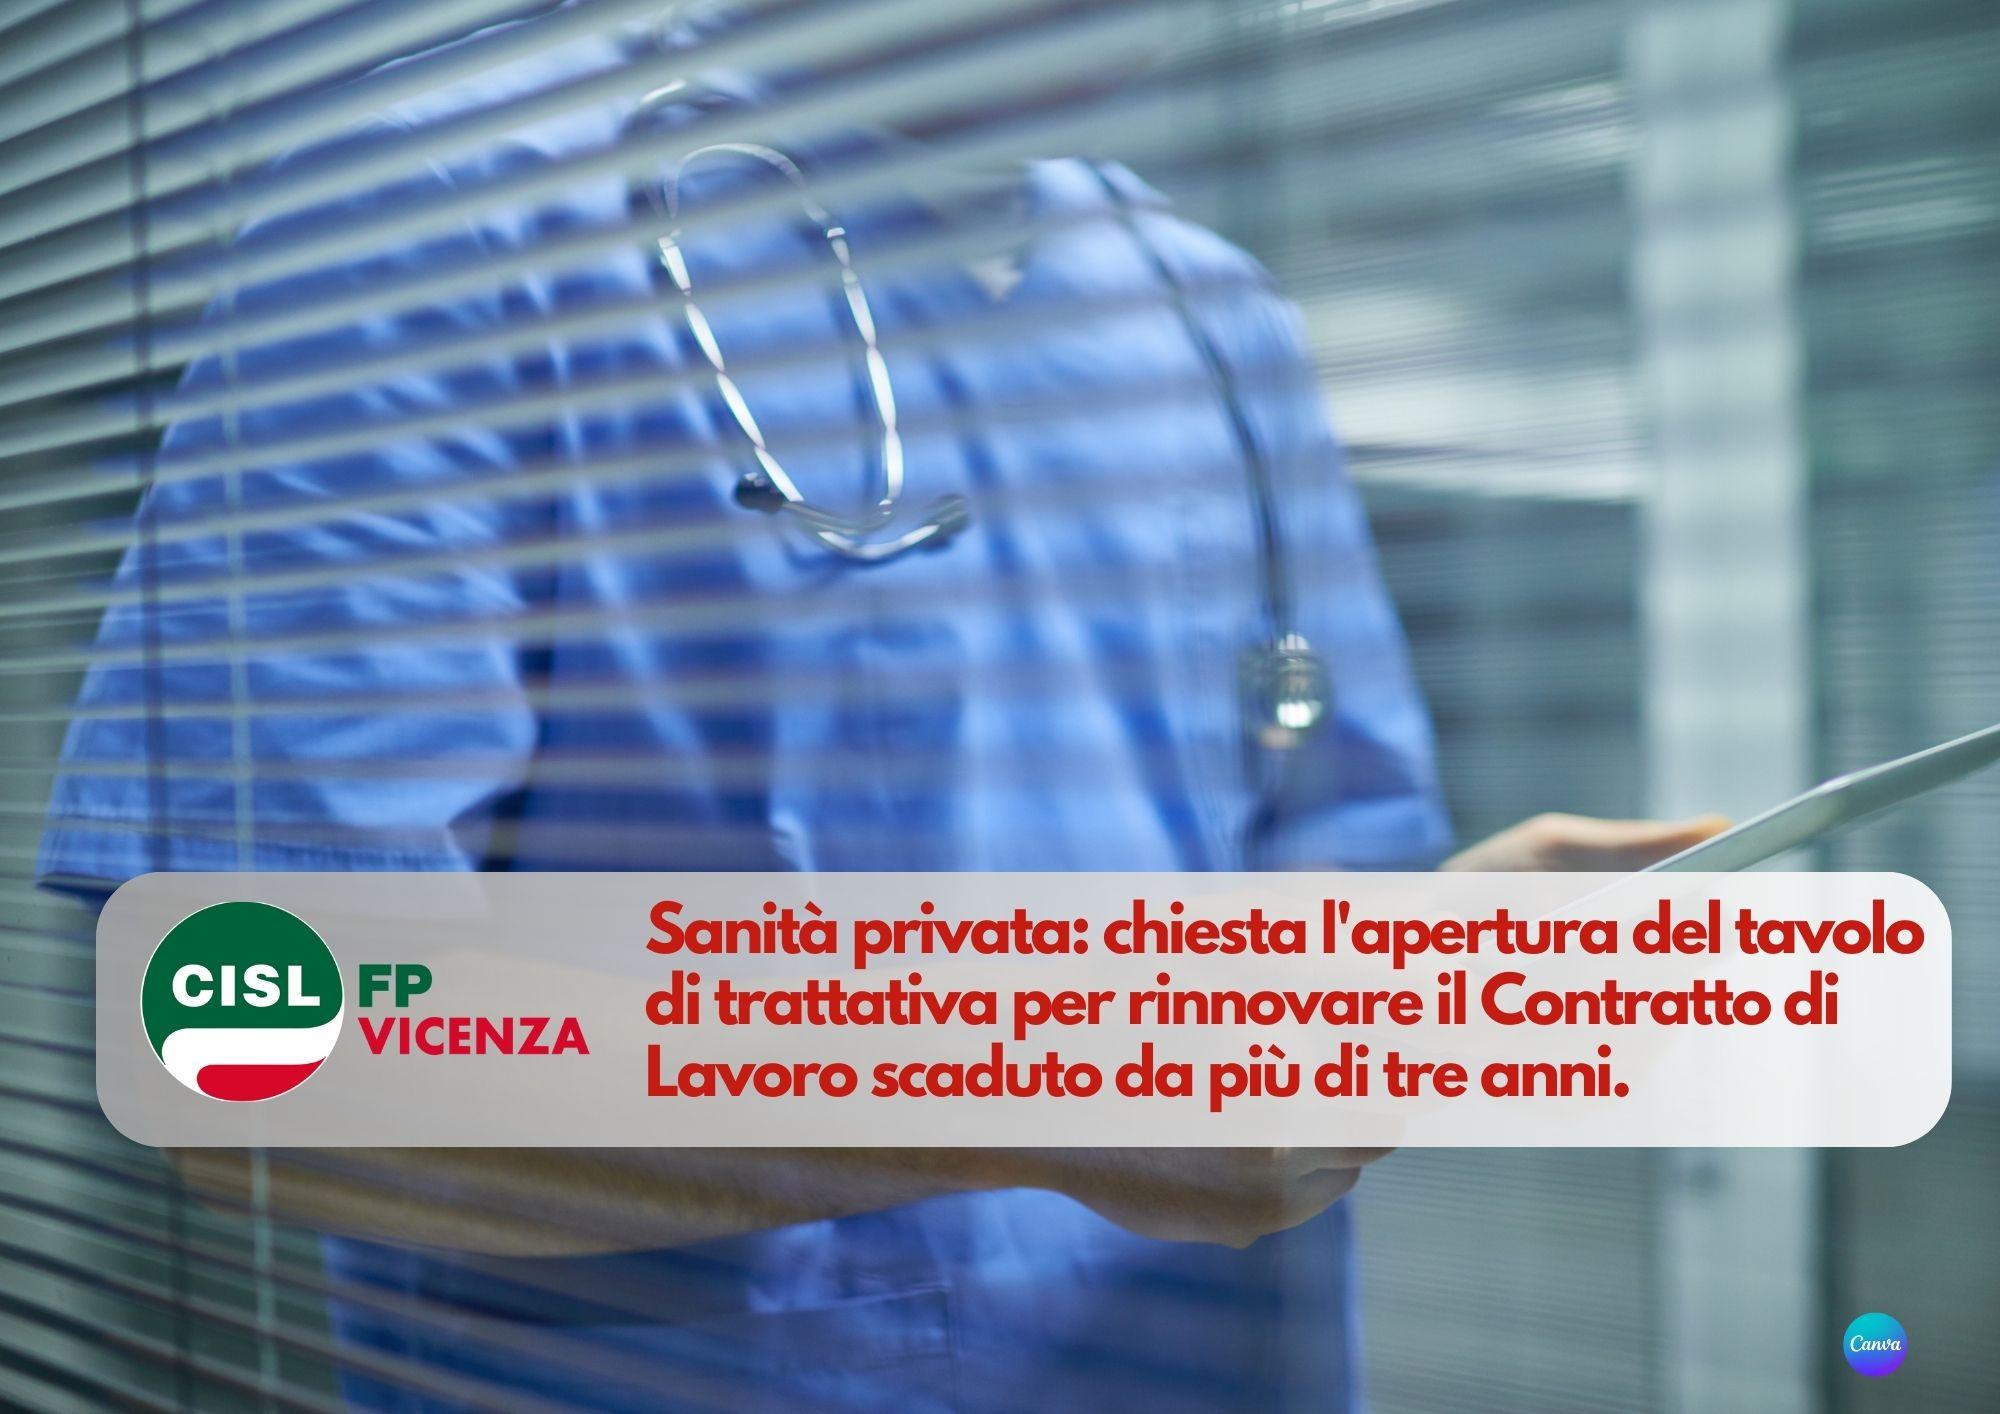 CISL FP Vicenza. Sanità privata: chiesta l'apertura del tavolo di trattativa per rinnovare il Contratto